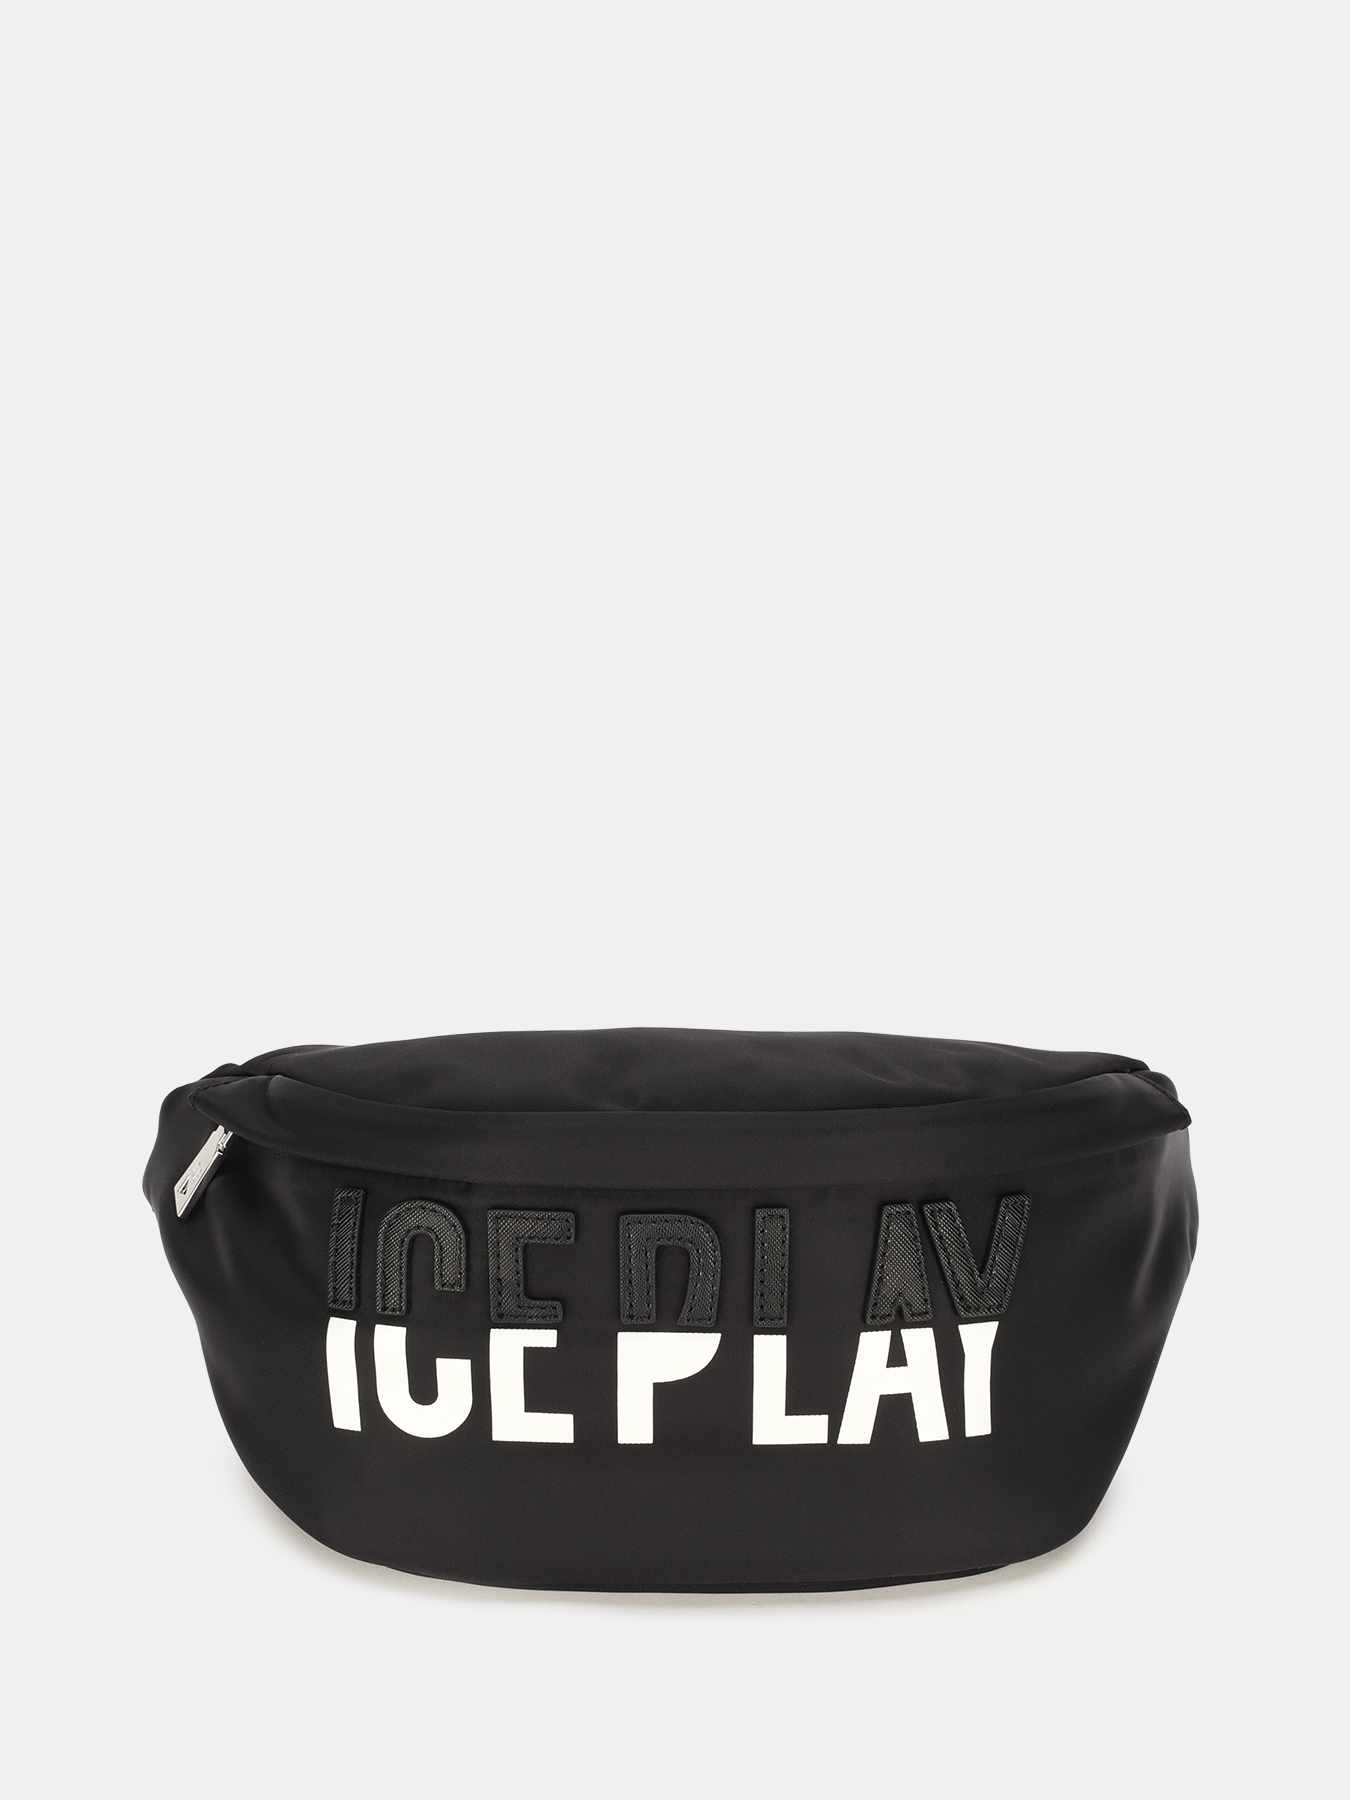 Поясная сумка Ice Play 425946-185, цвет черный, размер Б/Р